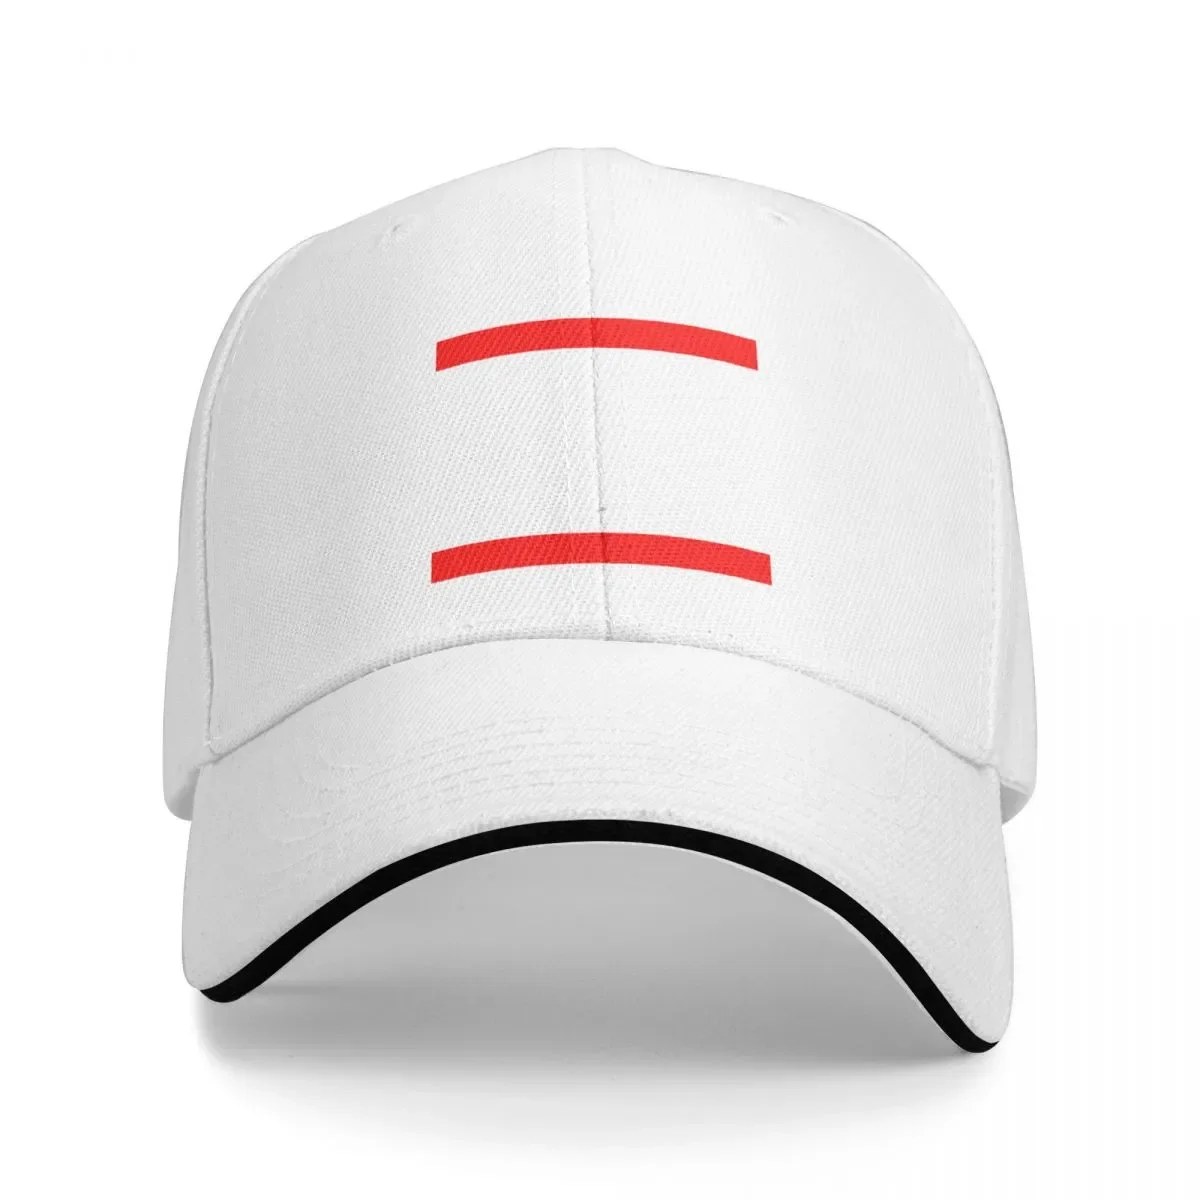 

New Bellport Box Cap Baseball Cap beach wild ball hat baseball caps hats for women Men's